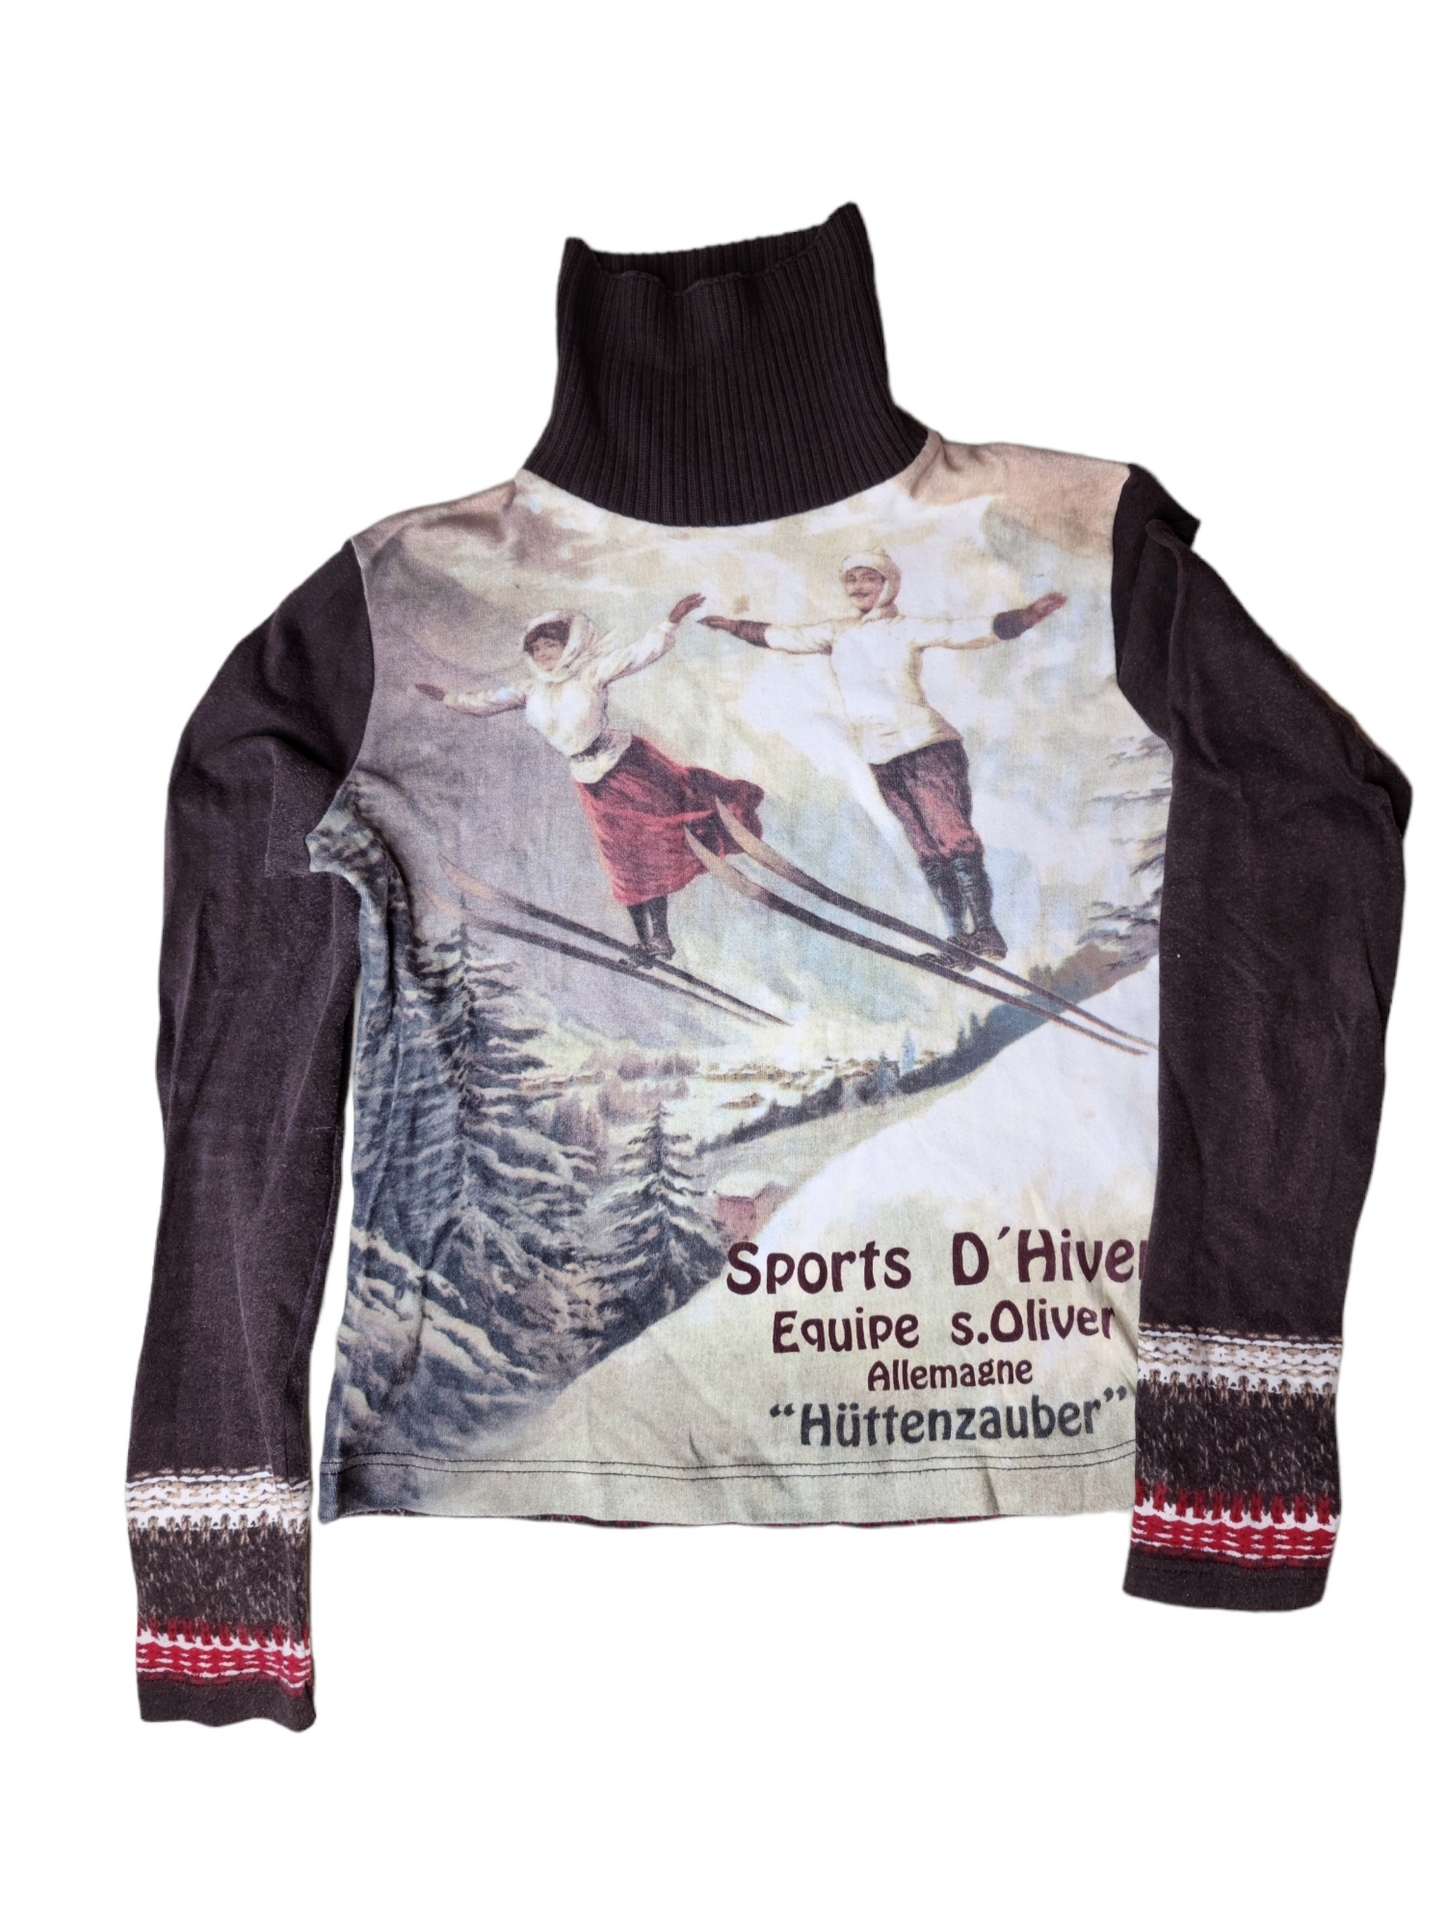 S. Olivier 90s vintage top imprime skieurs